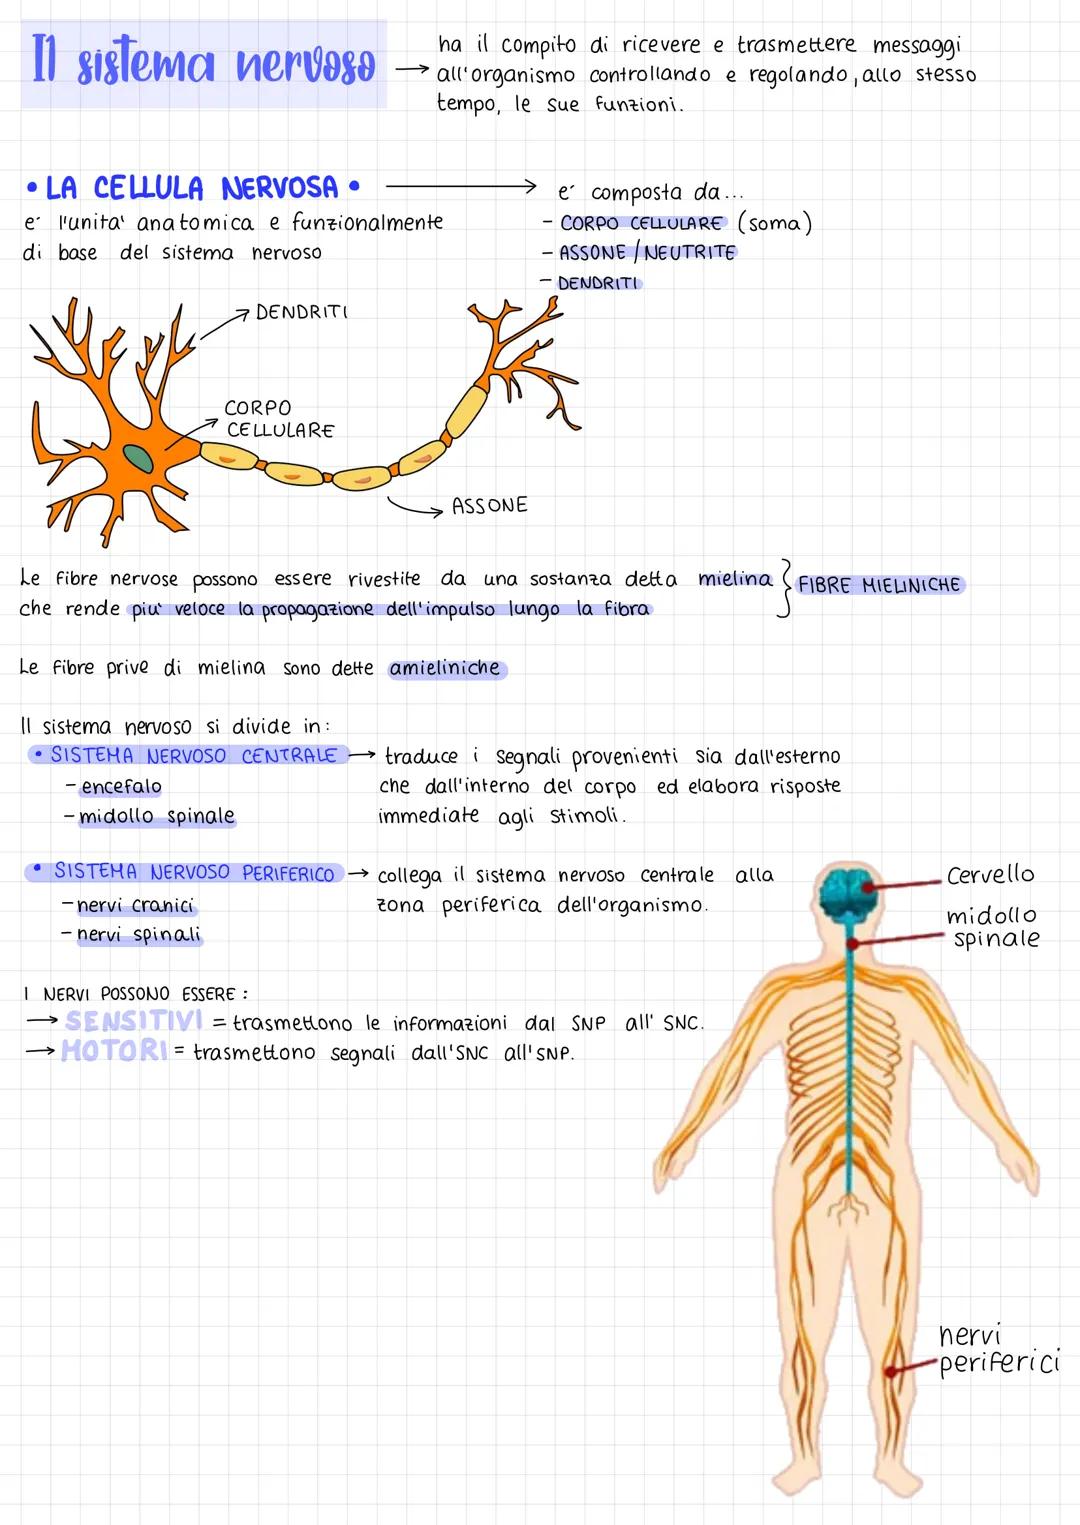 Il sistema nervoso
LA CELLULA NERVOSA
e l'unita' anatomica e funzionalmente
di base del sistema nervoso
DENDRITI
CORPO
CELLULARE
ha il compi